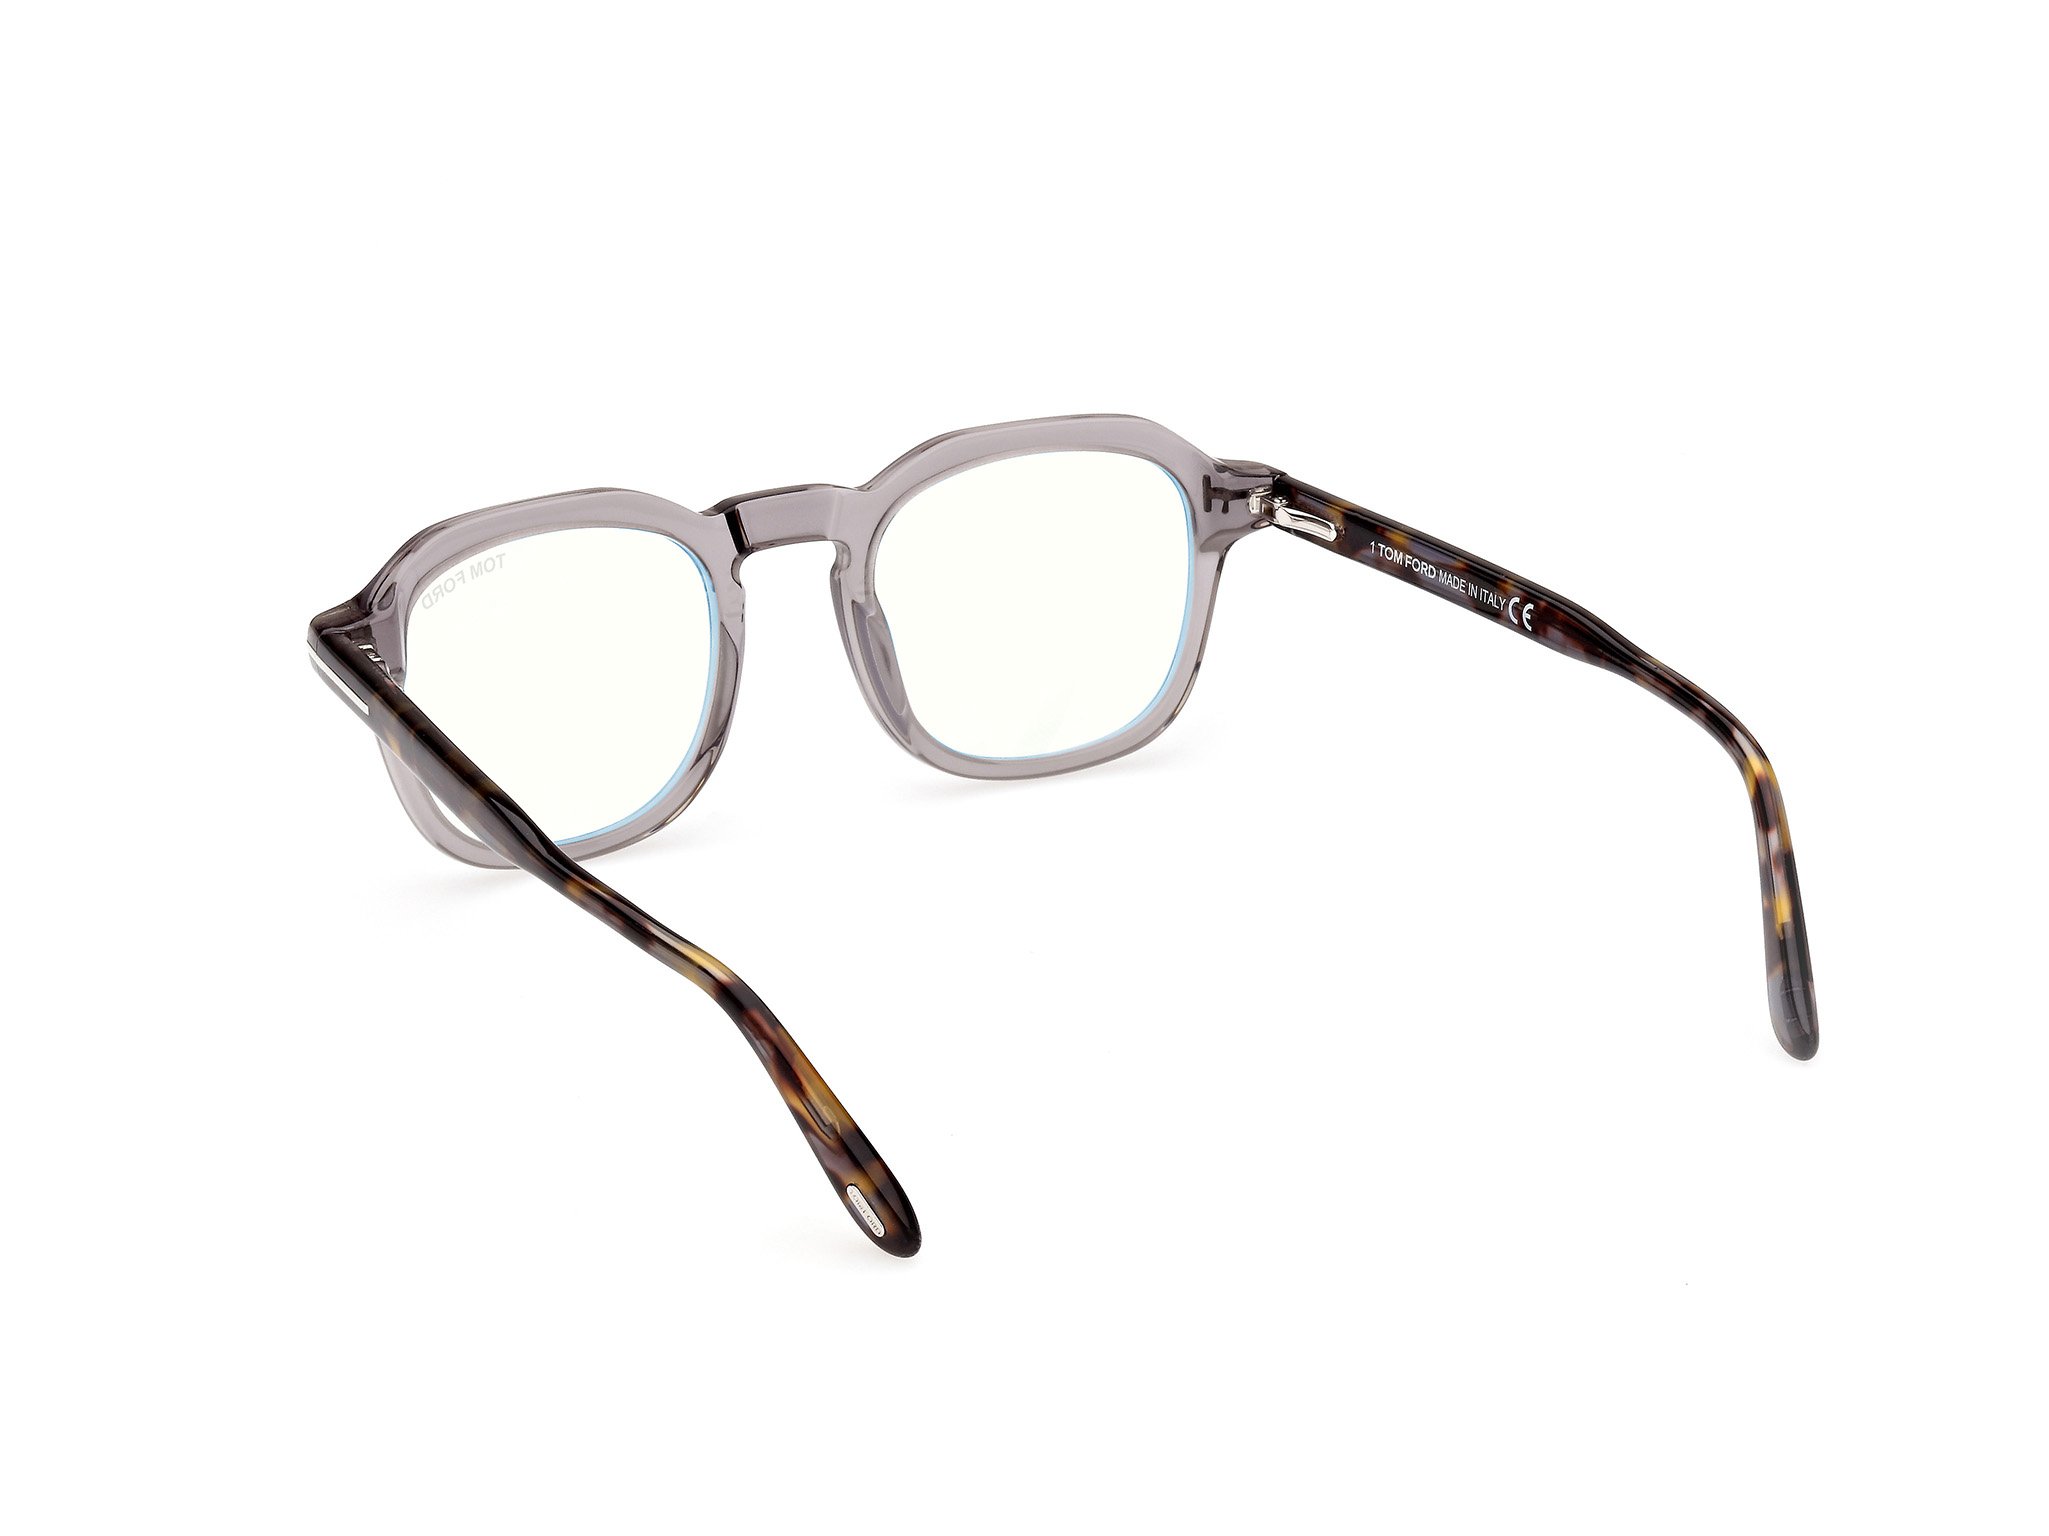 Das Bild zeigt die Korrektionsbrille FT5836-B 020 von der Marke Tom Ford in grau.